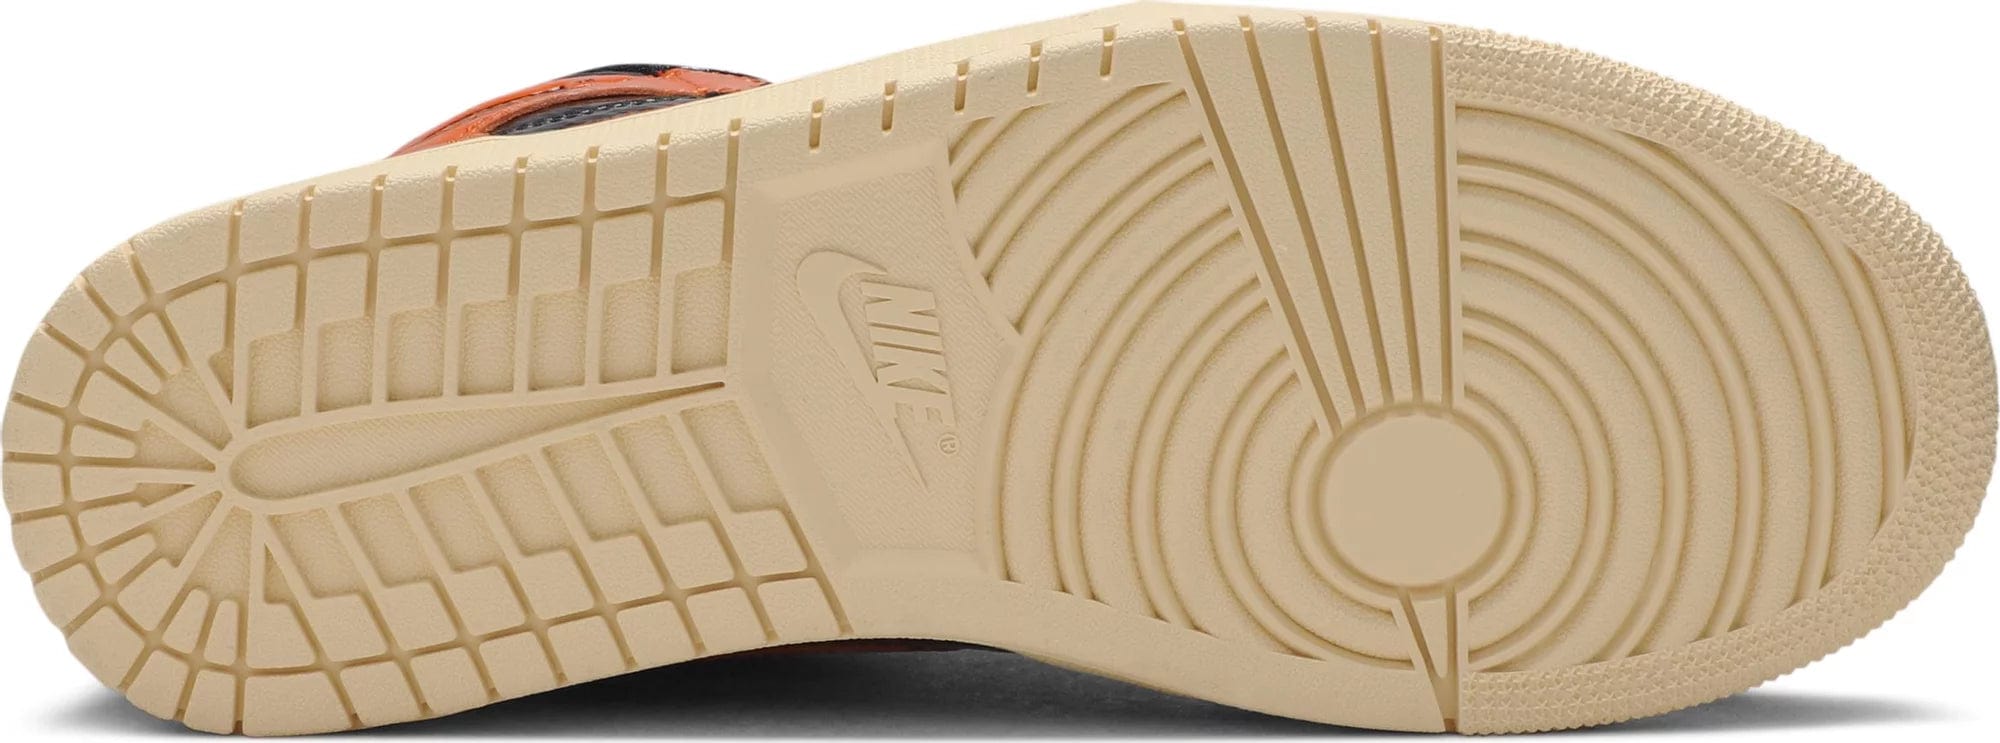 Nike Air Jordan 1 Retro High Shattered Backboard 3.0 Men's